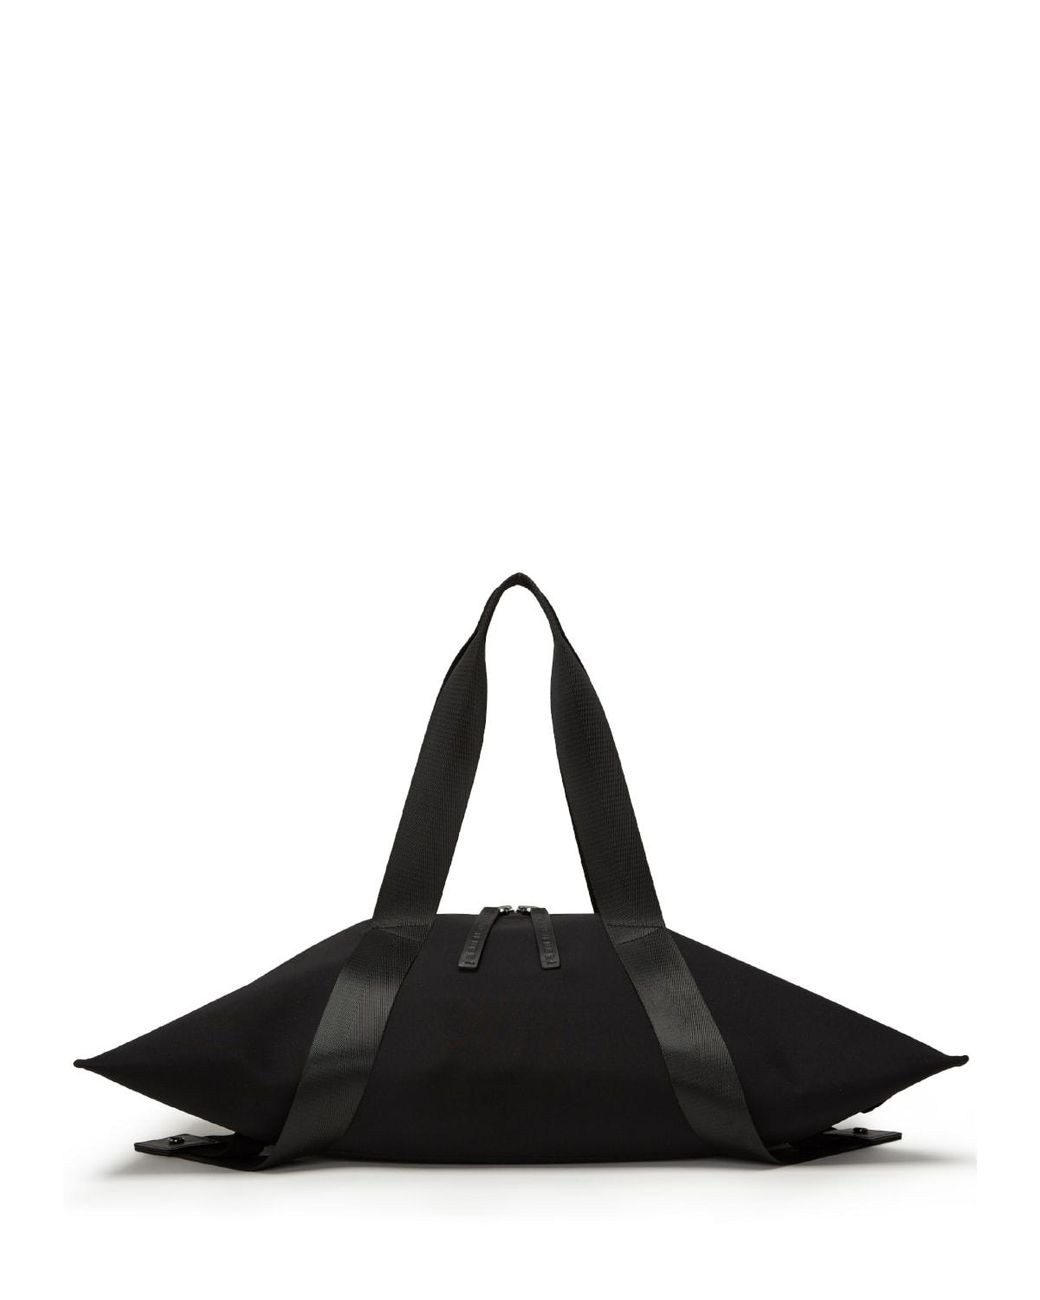 TRANSIENCE Zip-top Yoga/gym Shoulder Bag in Black